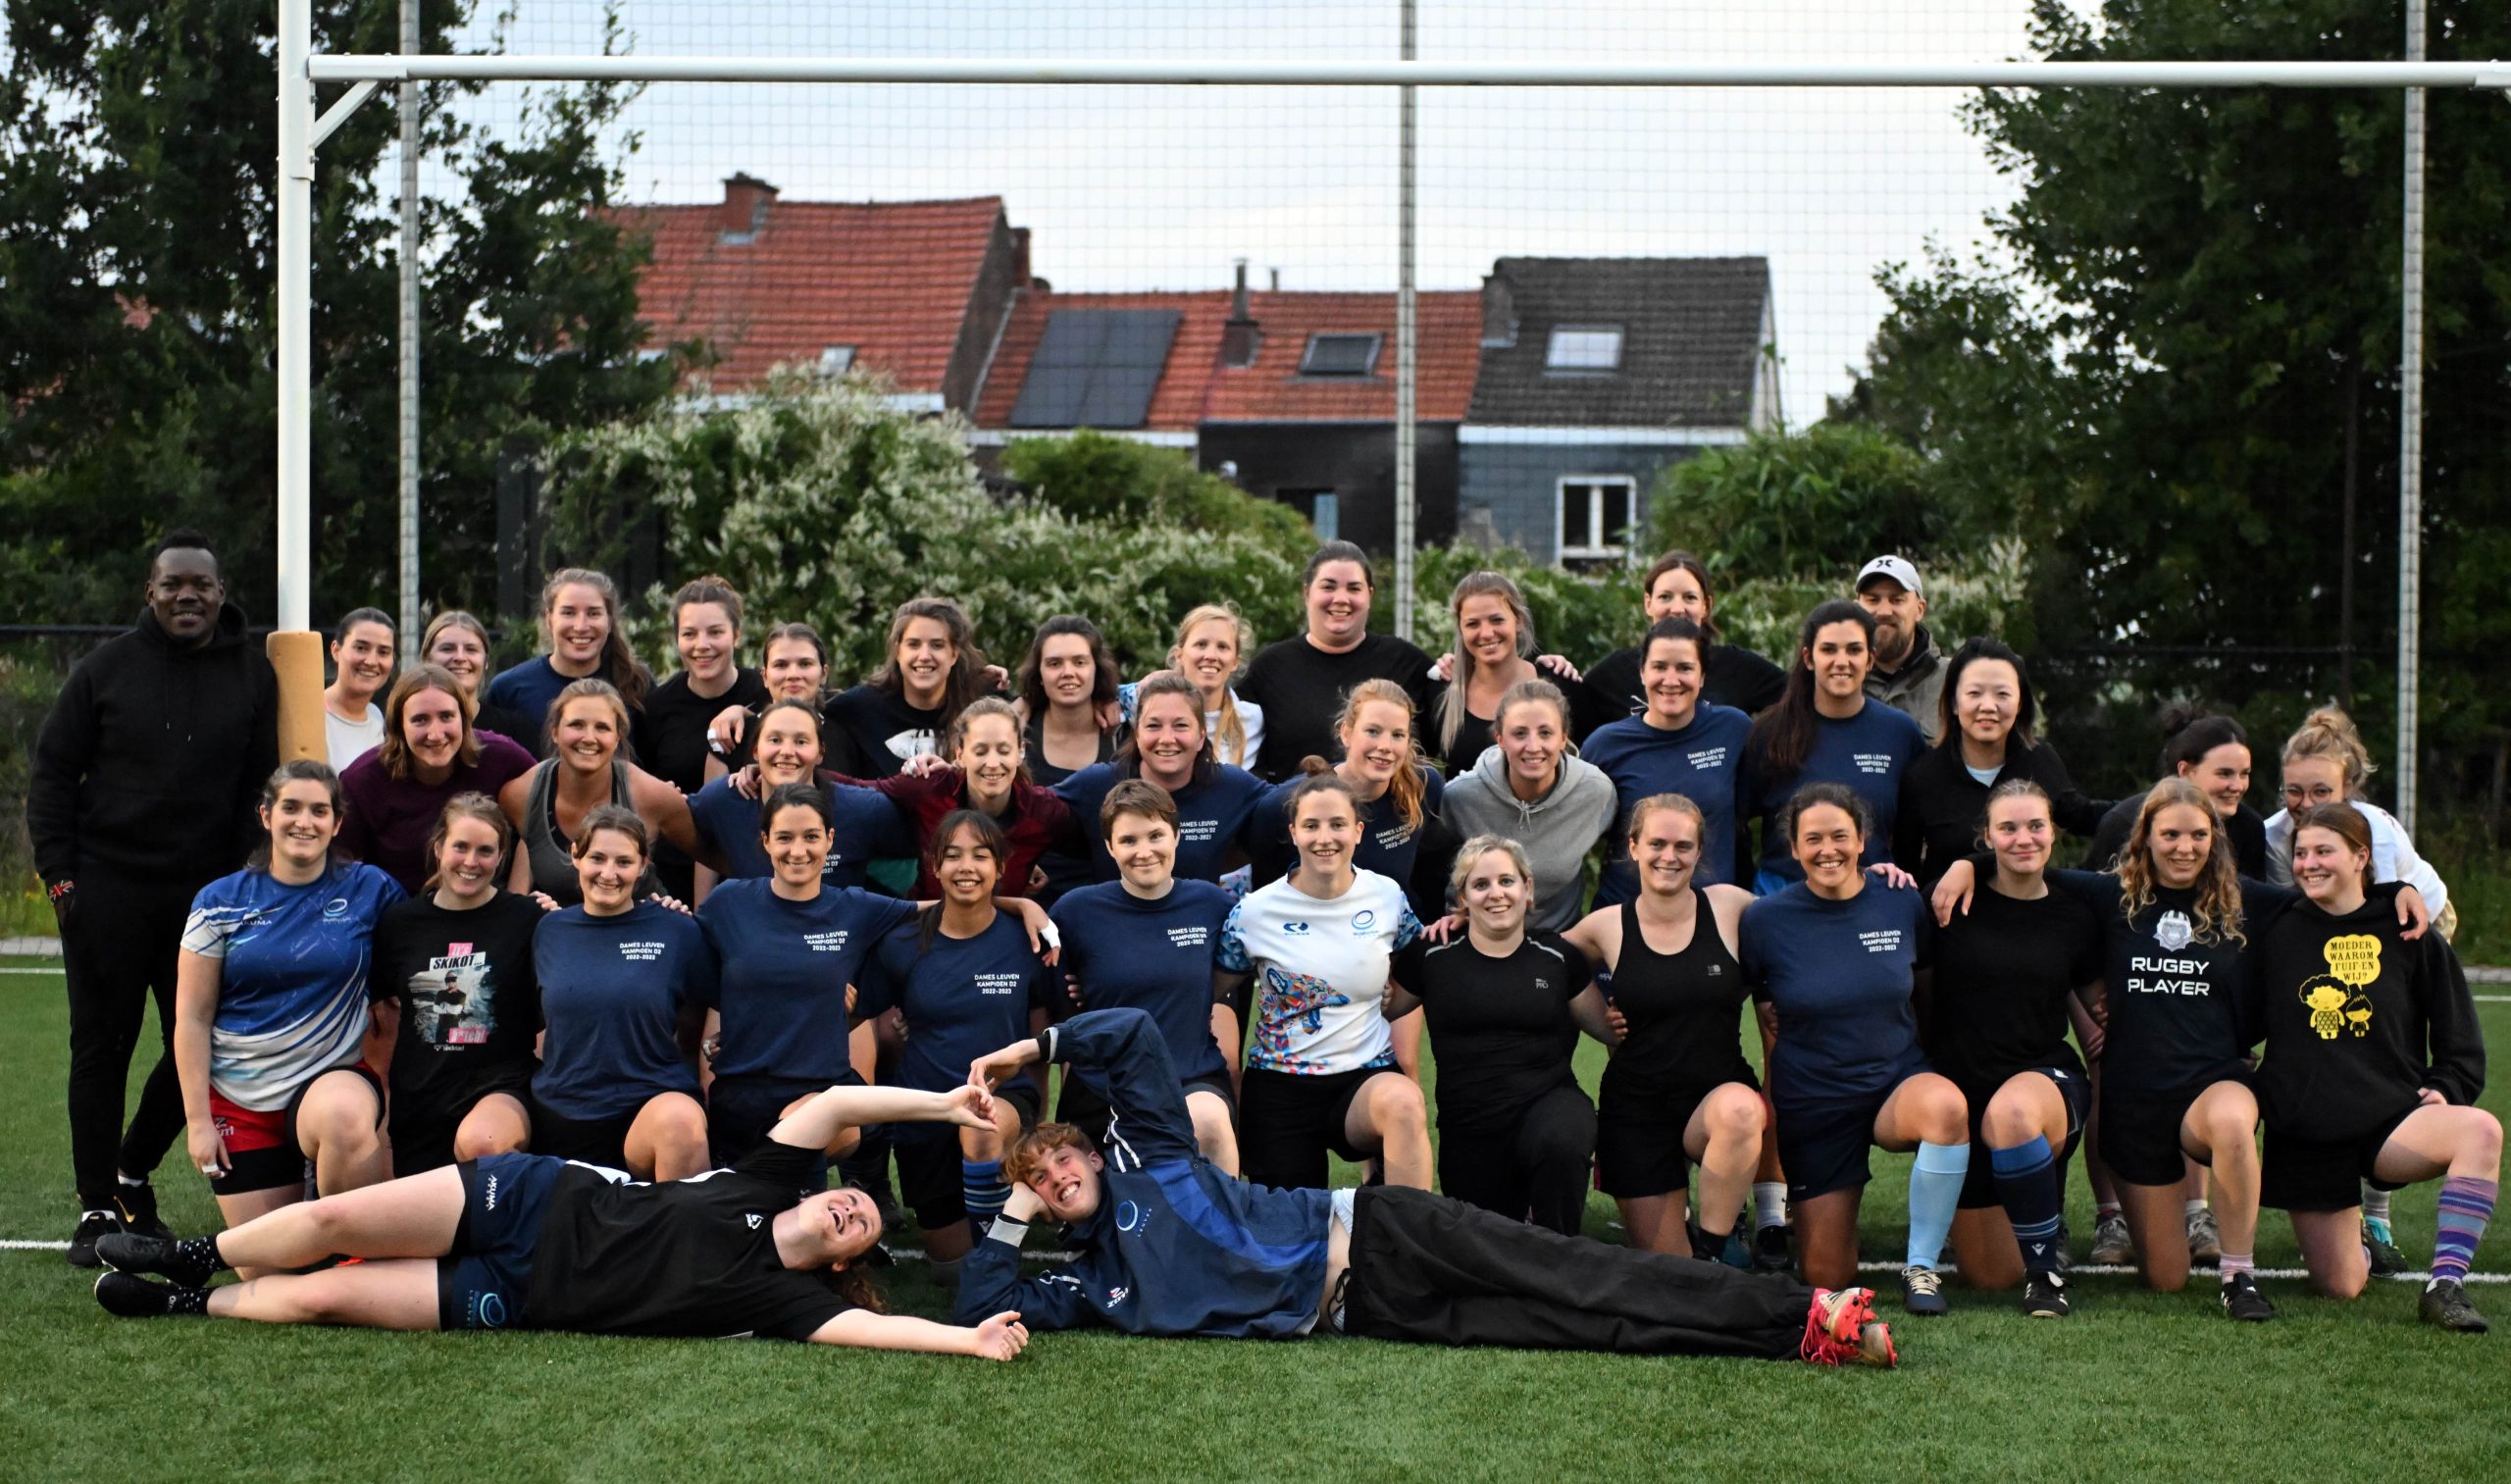 Vrouwen Rugby Club Leuven zetten competitie riant in